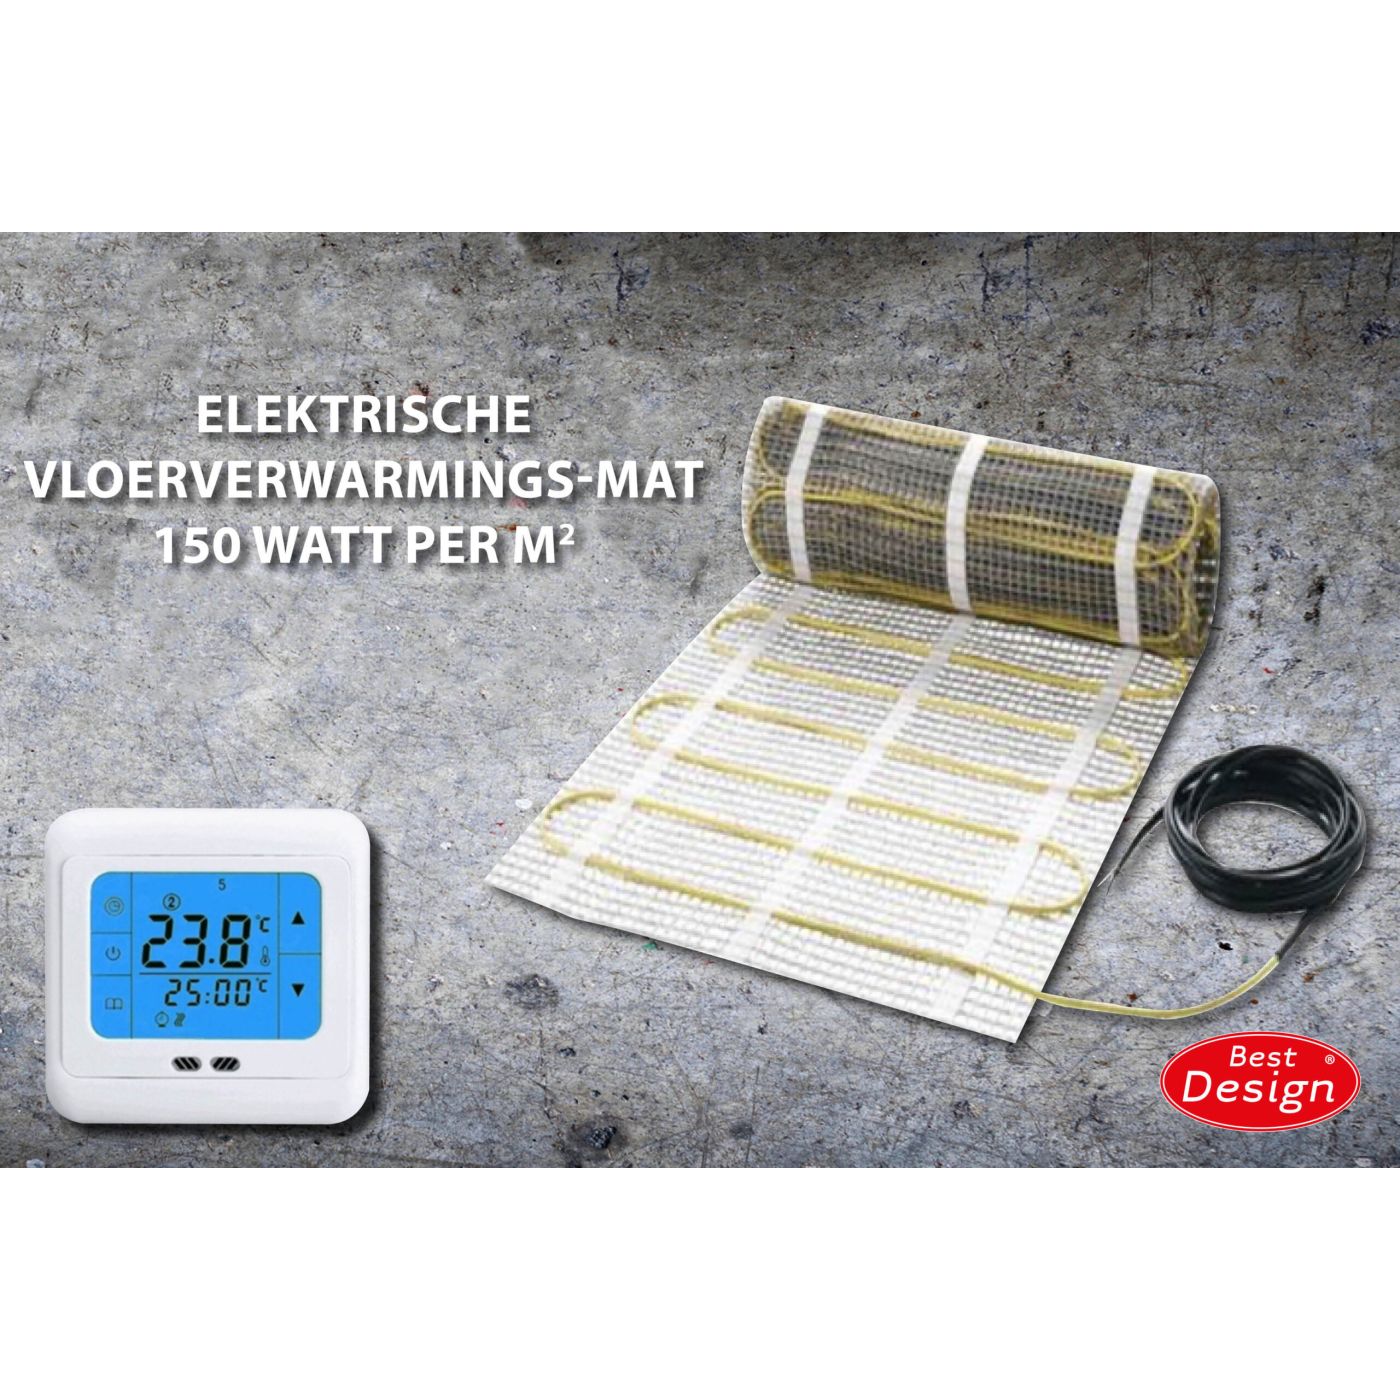 Best Design Comfort elektrische vloerverwarming mat 15.0m2